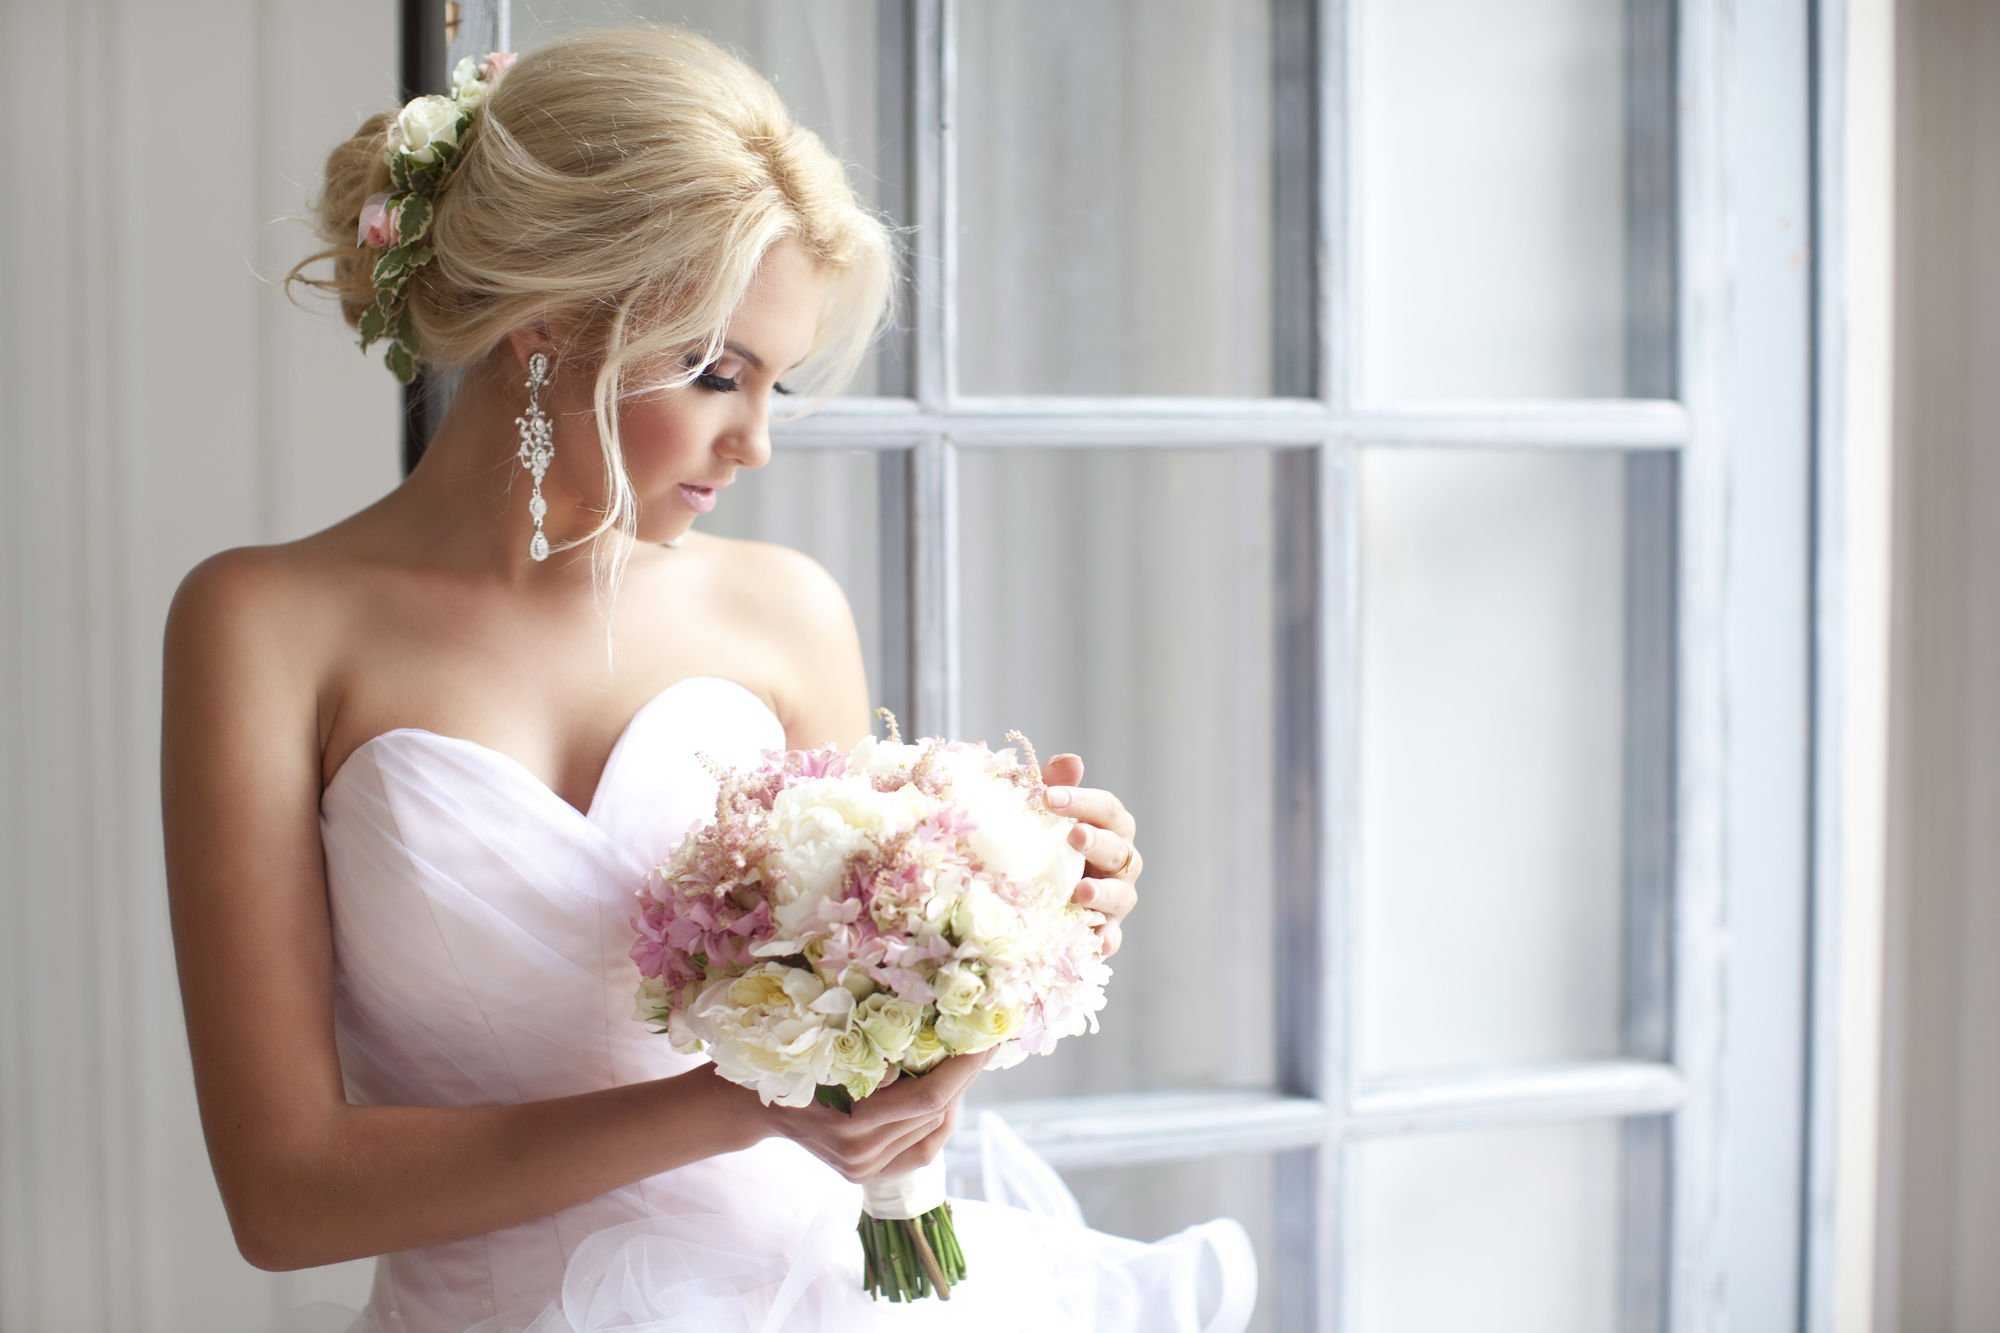 Как выбрать прическу на свадьбу Варианты свадебных причесок на длинные волосы Прически для невесты на среднюю длину волос с фатой и диадемой Фото причесок для невесты с фатой